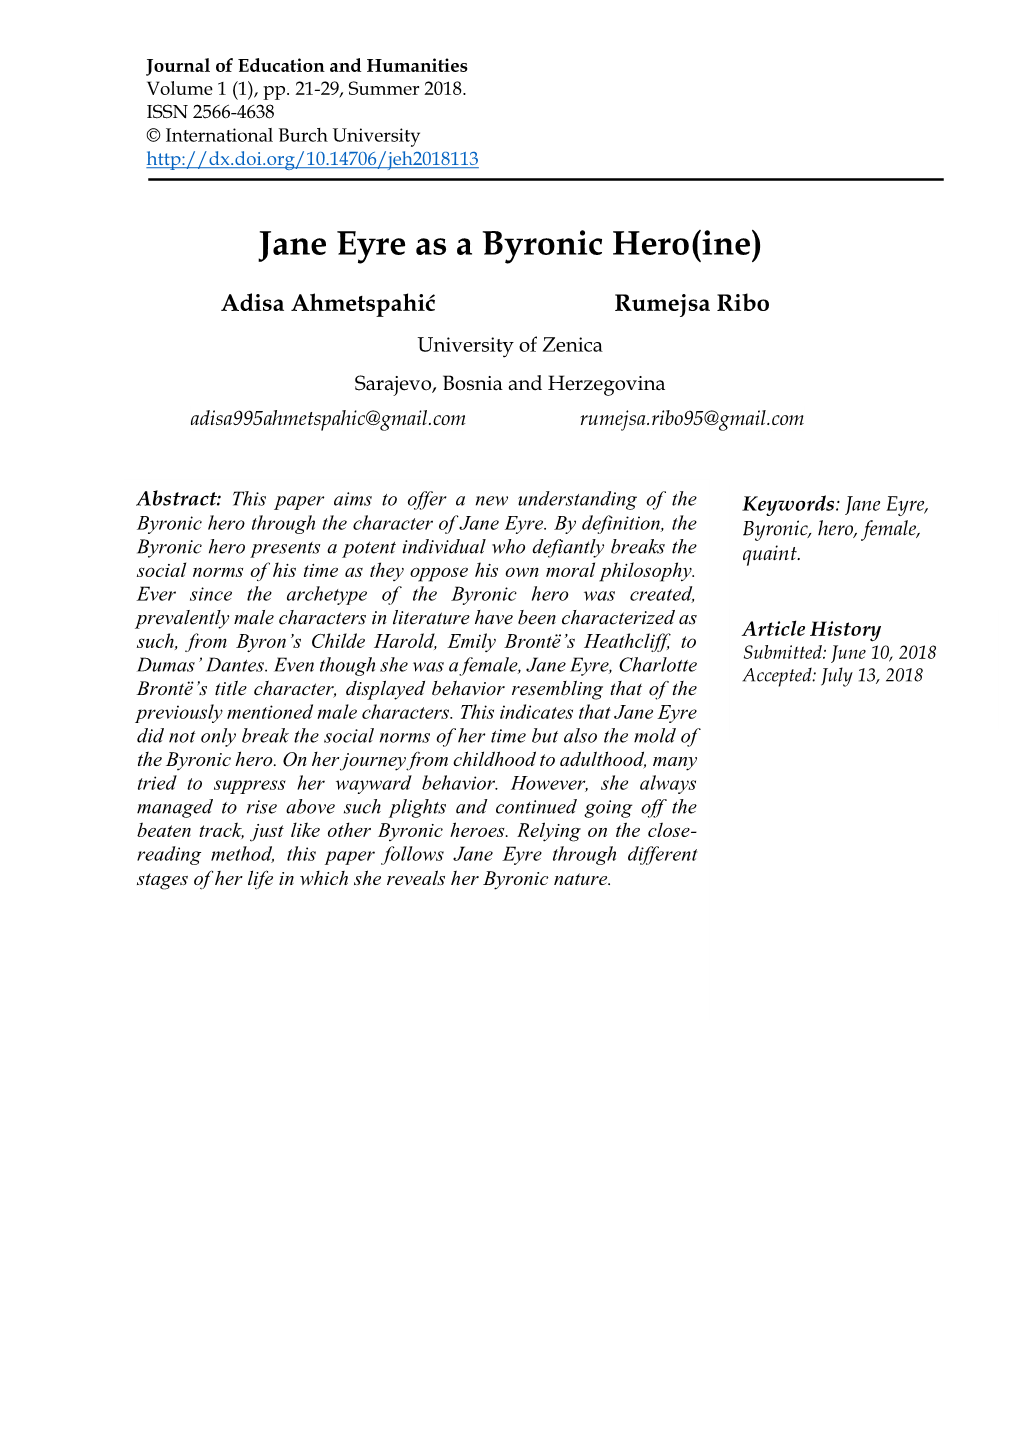 Jane Eyre As a Byronic Hero(Ine)